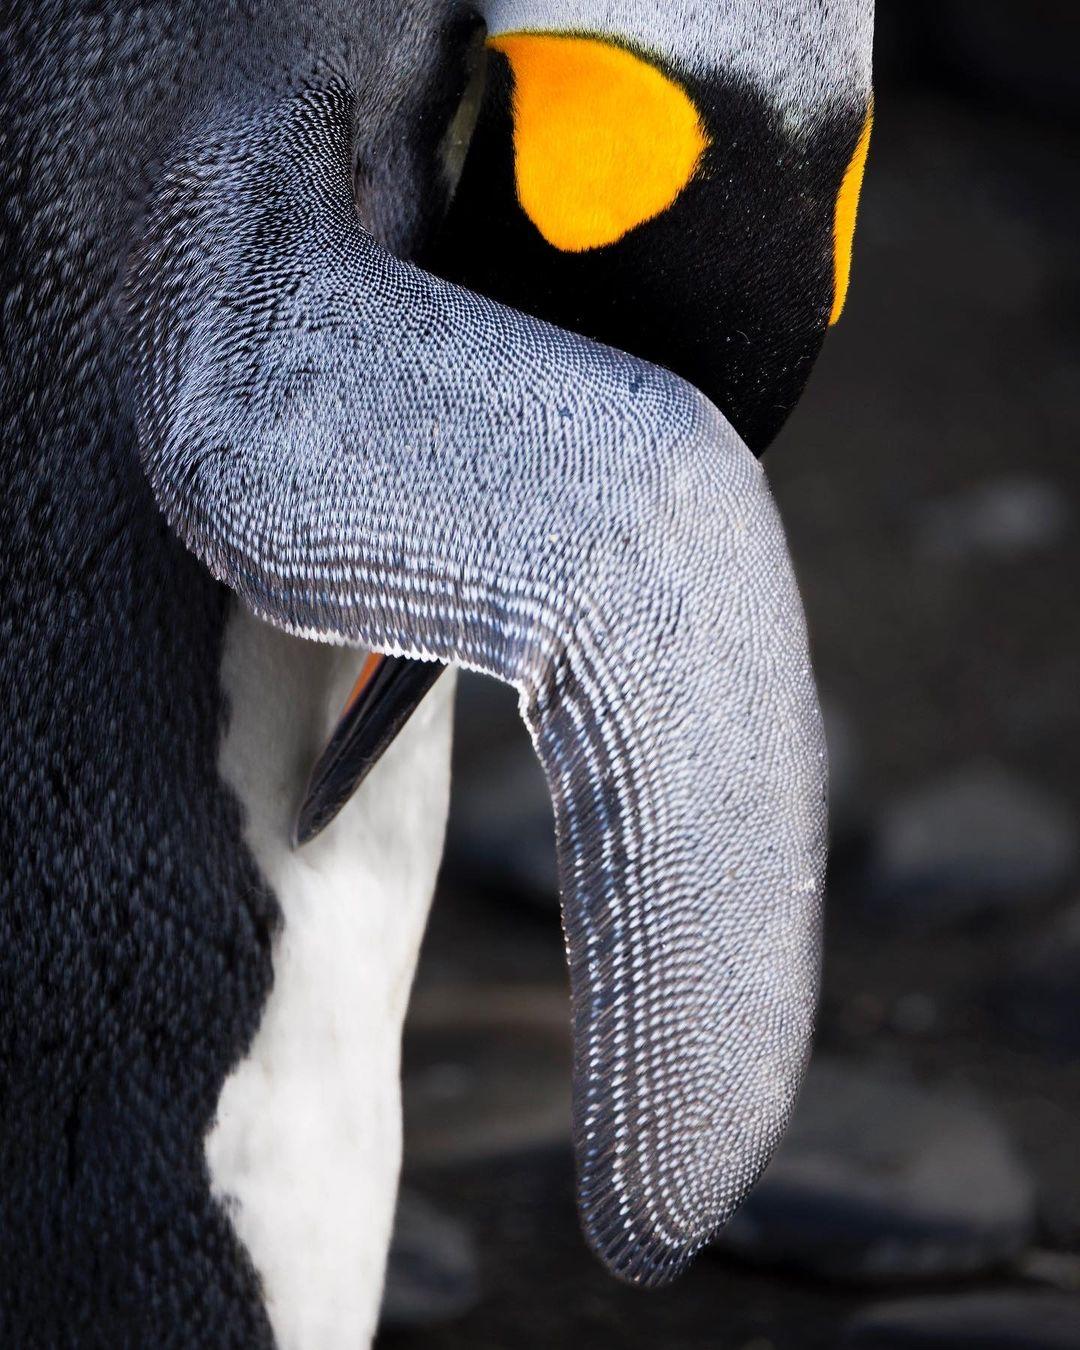 企鹅，来自摄影师Paul Zizka。